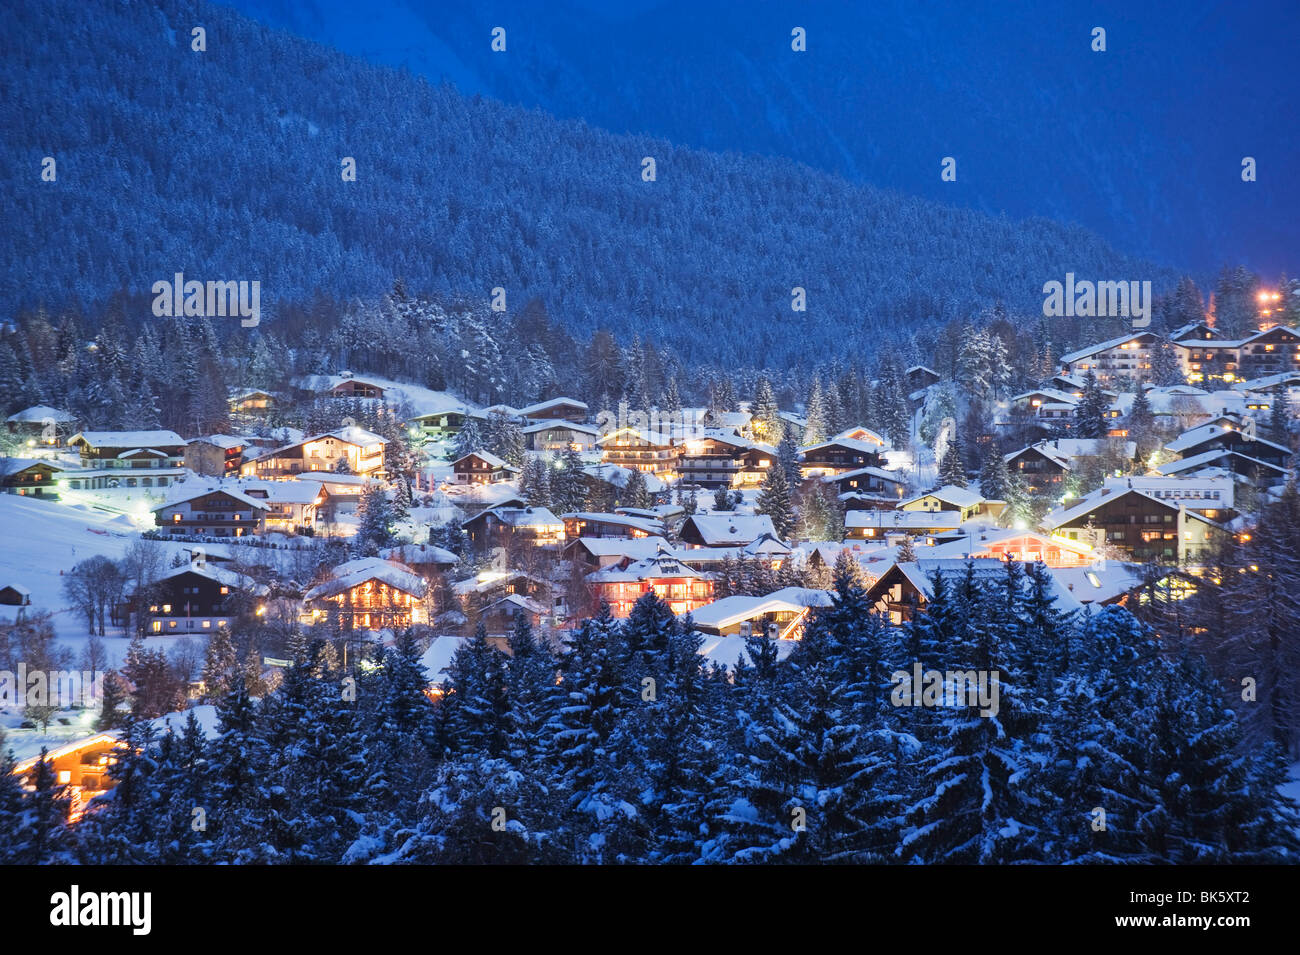 Village de Seefeld, Tyrol, Autriche, Europe Banque D'Images